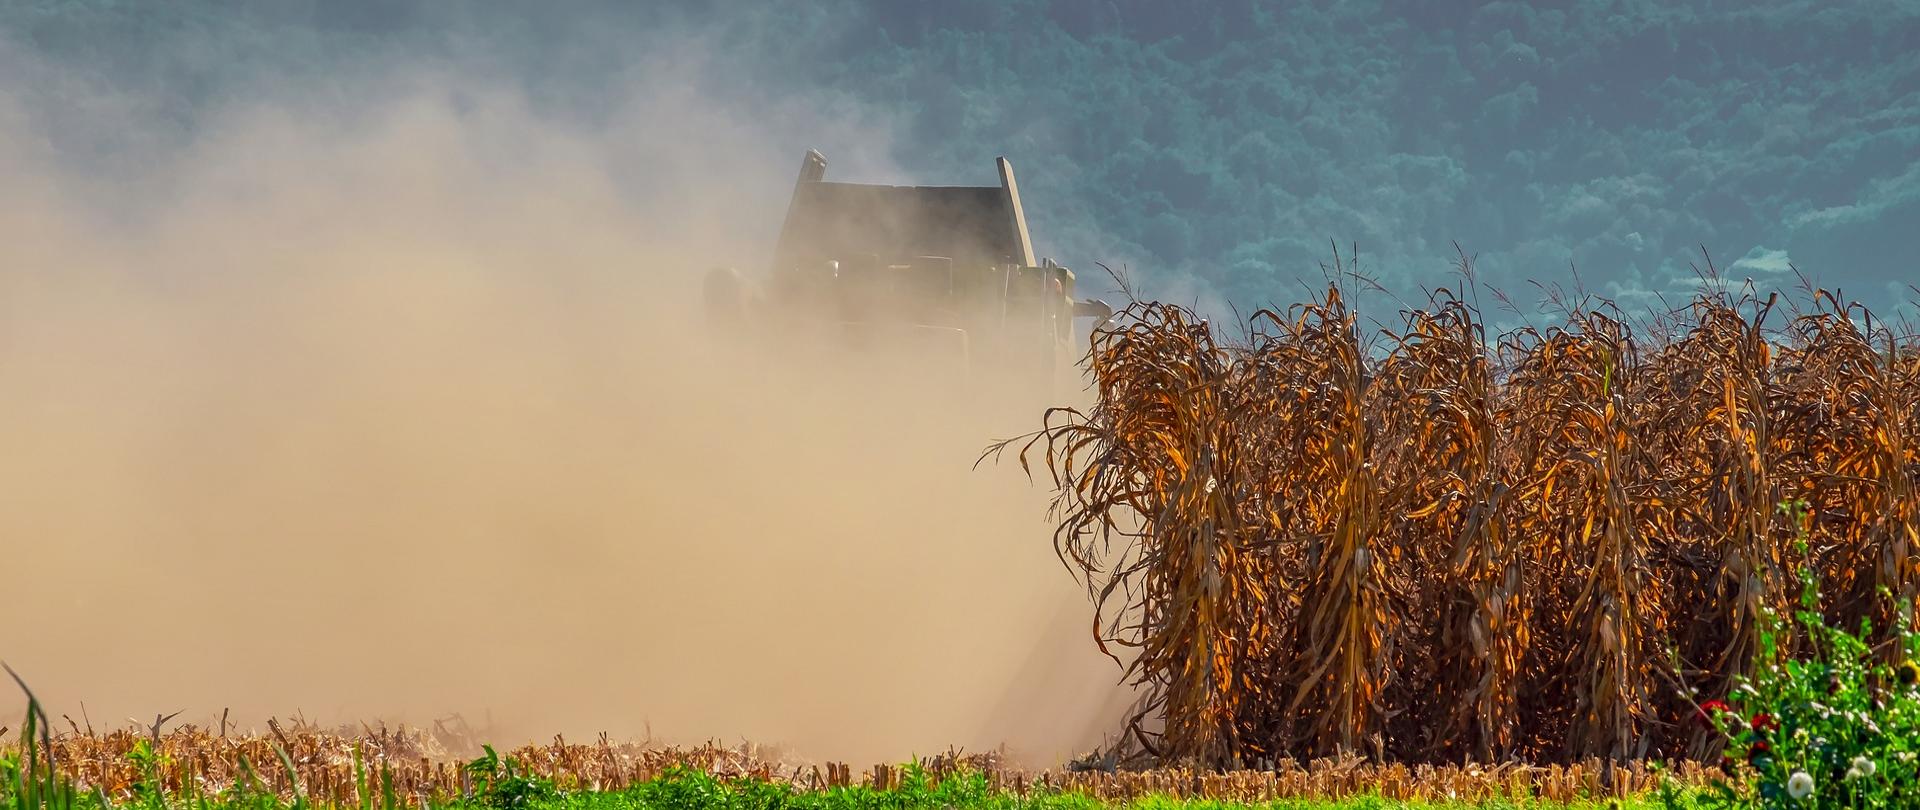 Zdjęcie kombajnu w chmurze pyłu zbierającego wyschnięte plony z pola